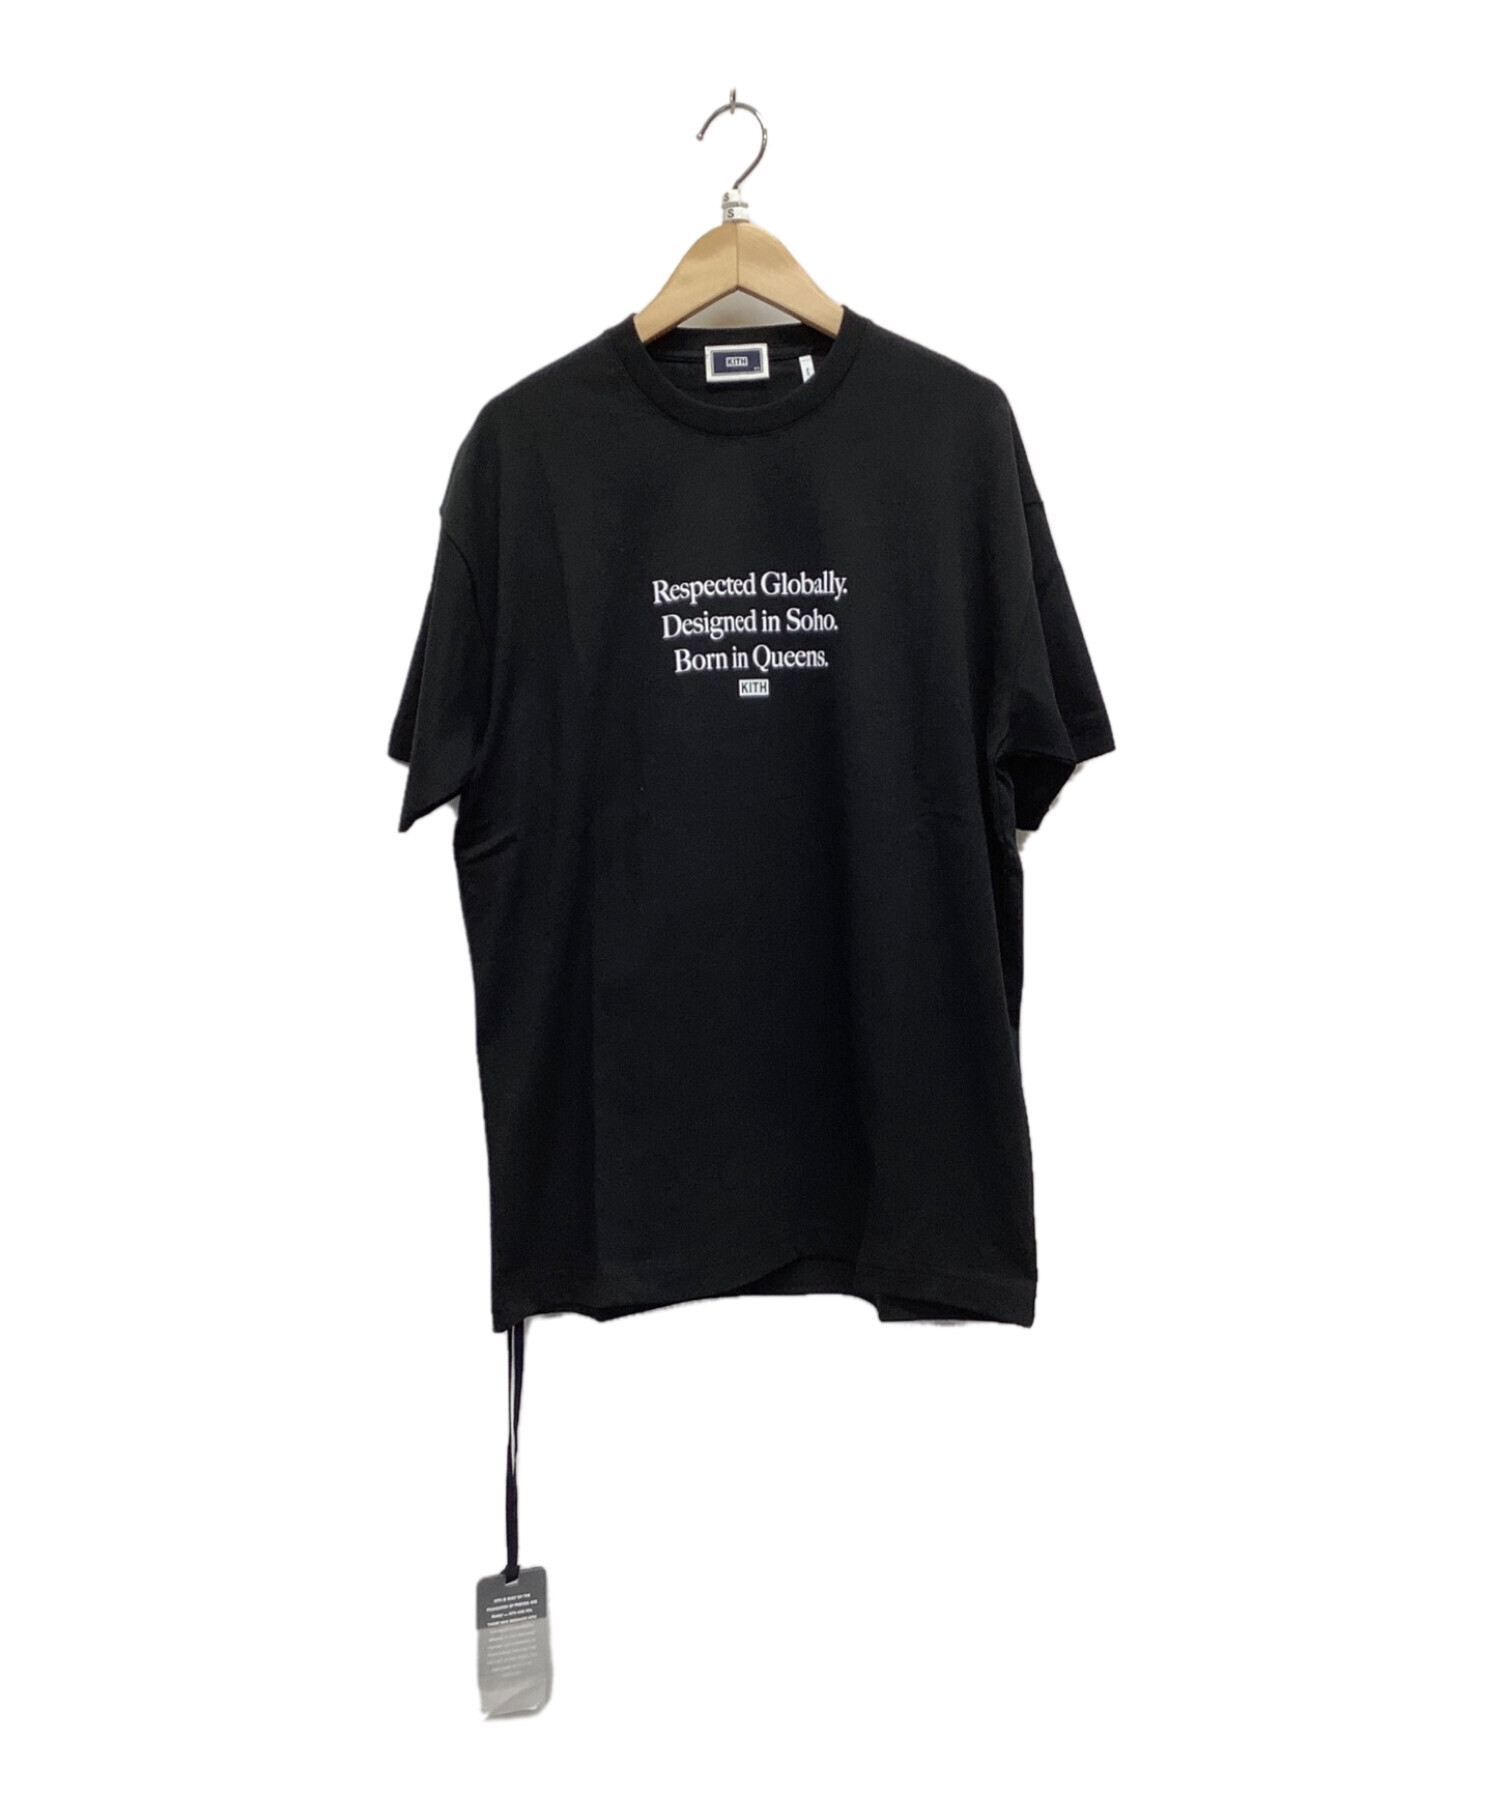 KITH (キス) プリントTシャツ ブラック サイズ:XS